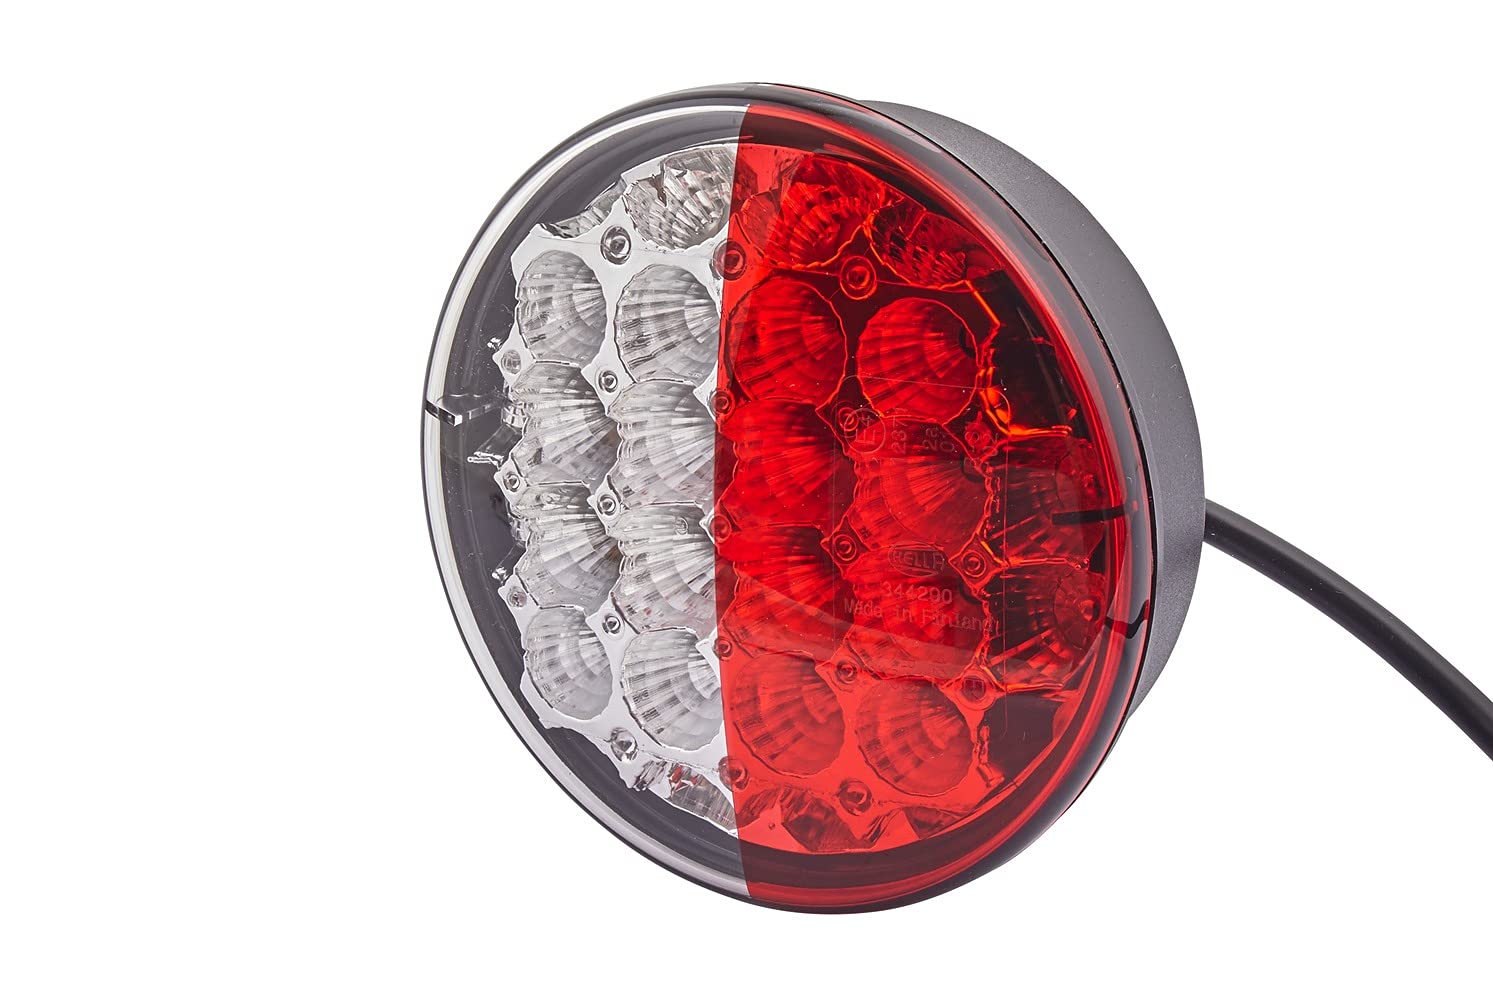 HELLA Rückleuchte - LED - Anhänger Beleuchtung - 24V / 12V - Einbau/geschraubt - ECE/ADR/GGVS - Lichtscheibenfarbe: rot/weiß/rot - Kabel: 500mm - Stecker: offene Kabelenden - 2SD 344 200-311 von Hella